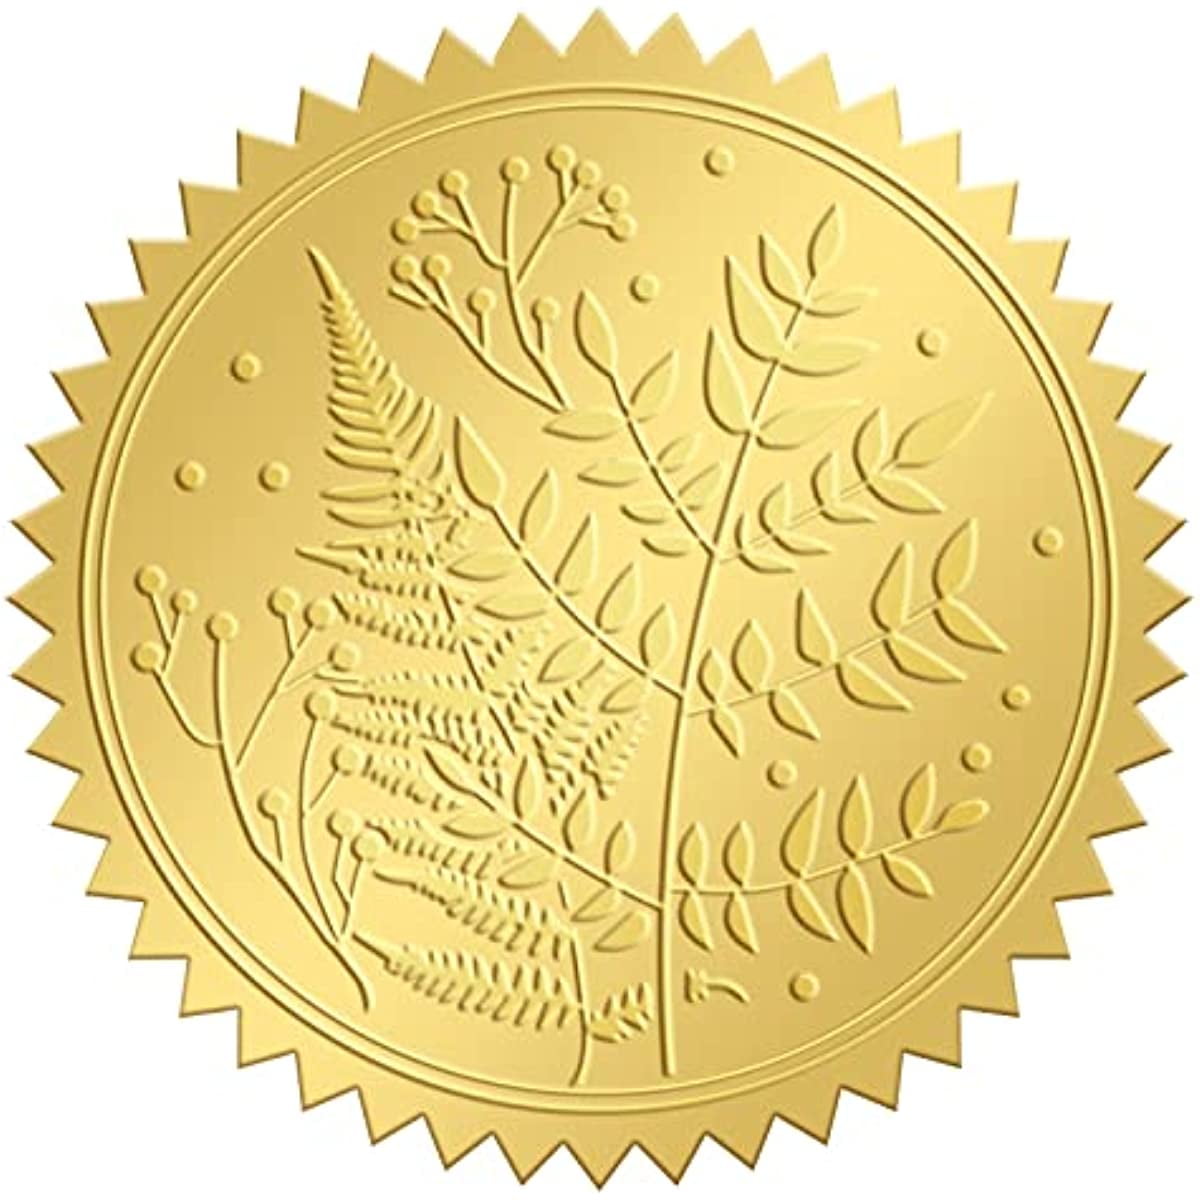 Gold Foil Sticker Fern Leaf 100pcs Certificate Seals Gold Embossed Round  Embossed Foil Seal Stickers for Envelopes Invitation Card Diplomas Awards  Graduation Celebration 